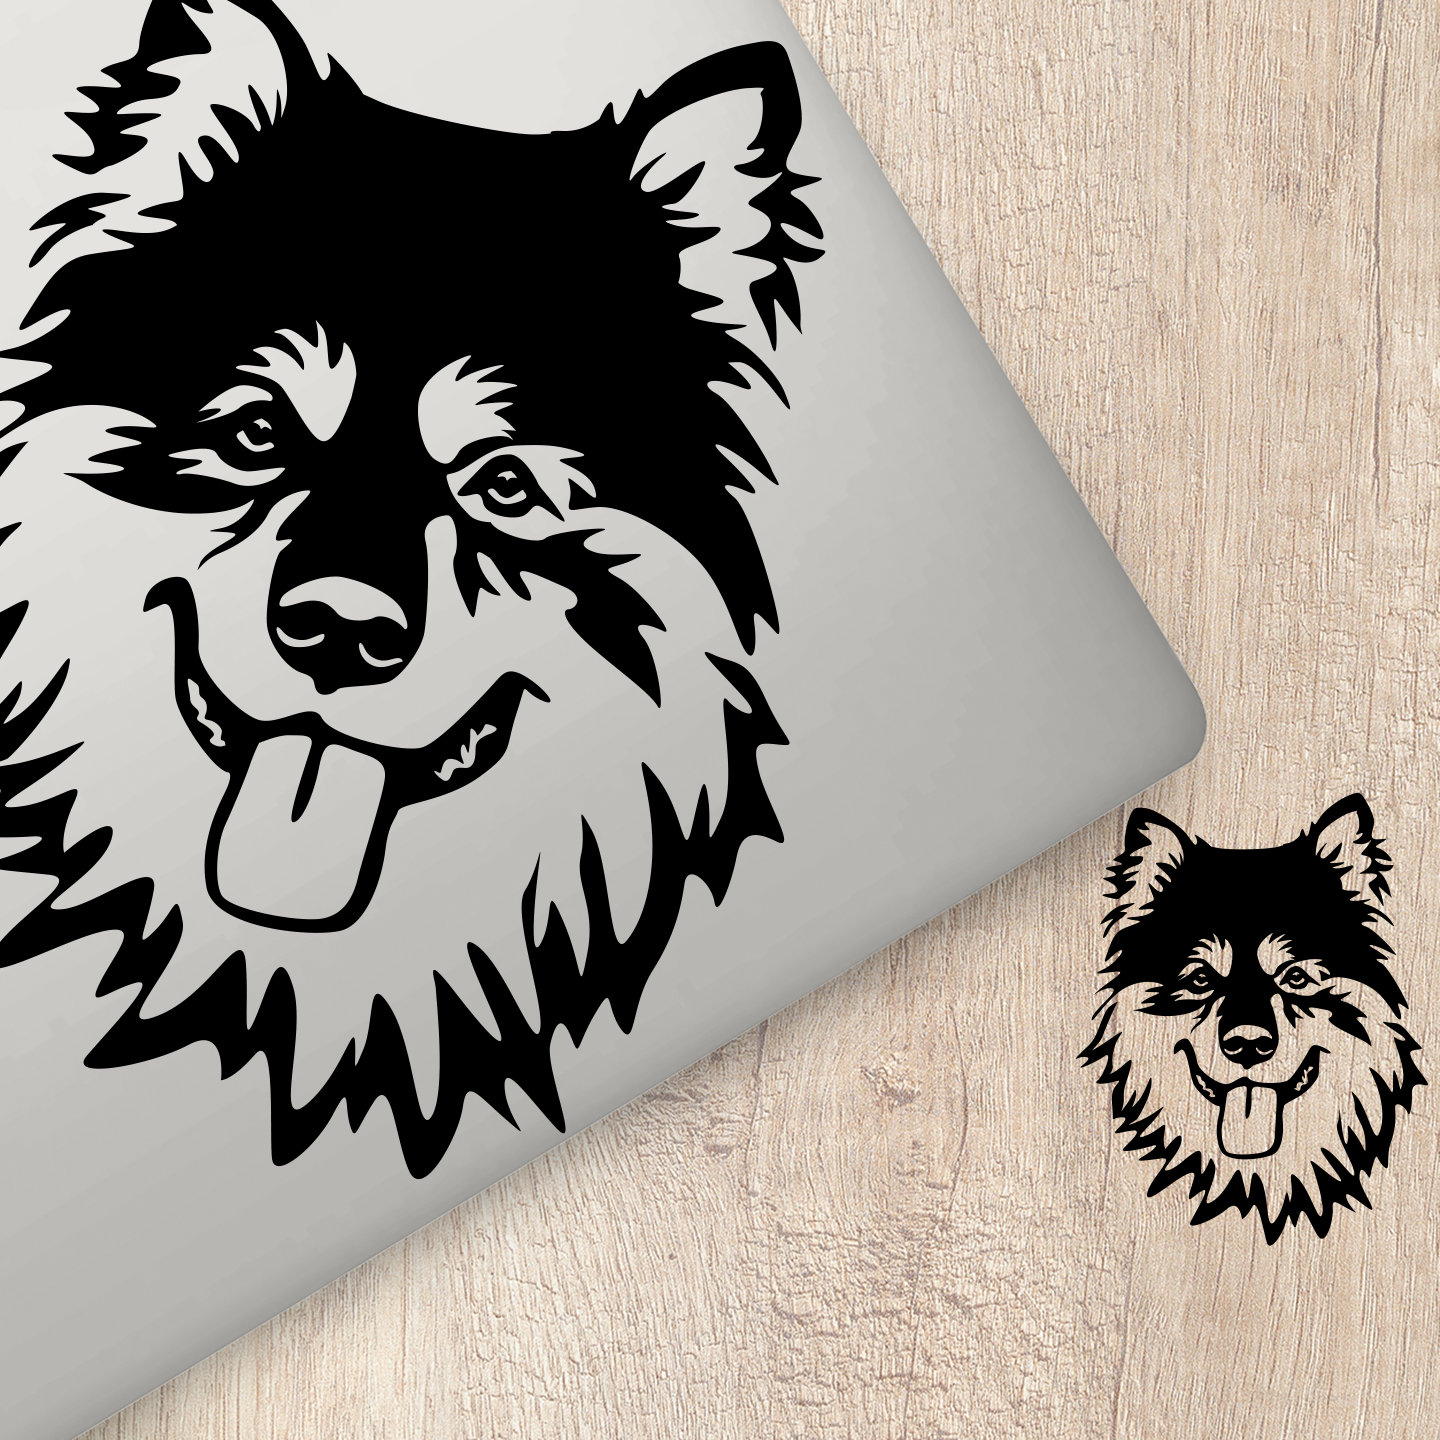 Finnish Lapphund Sticker